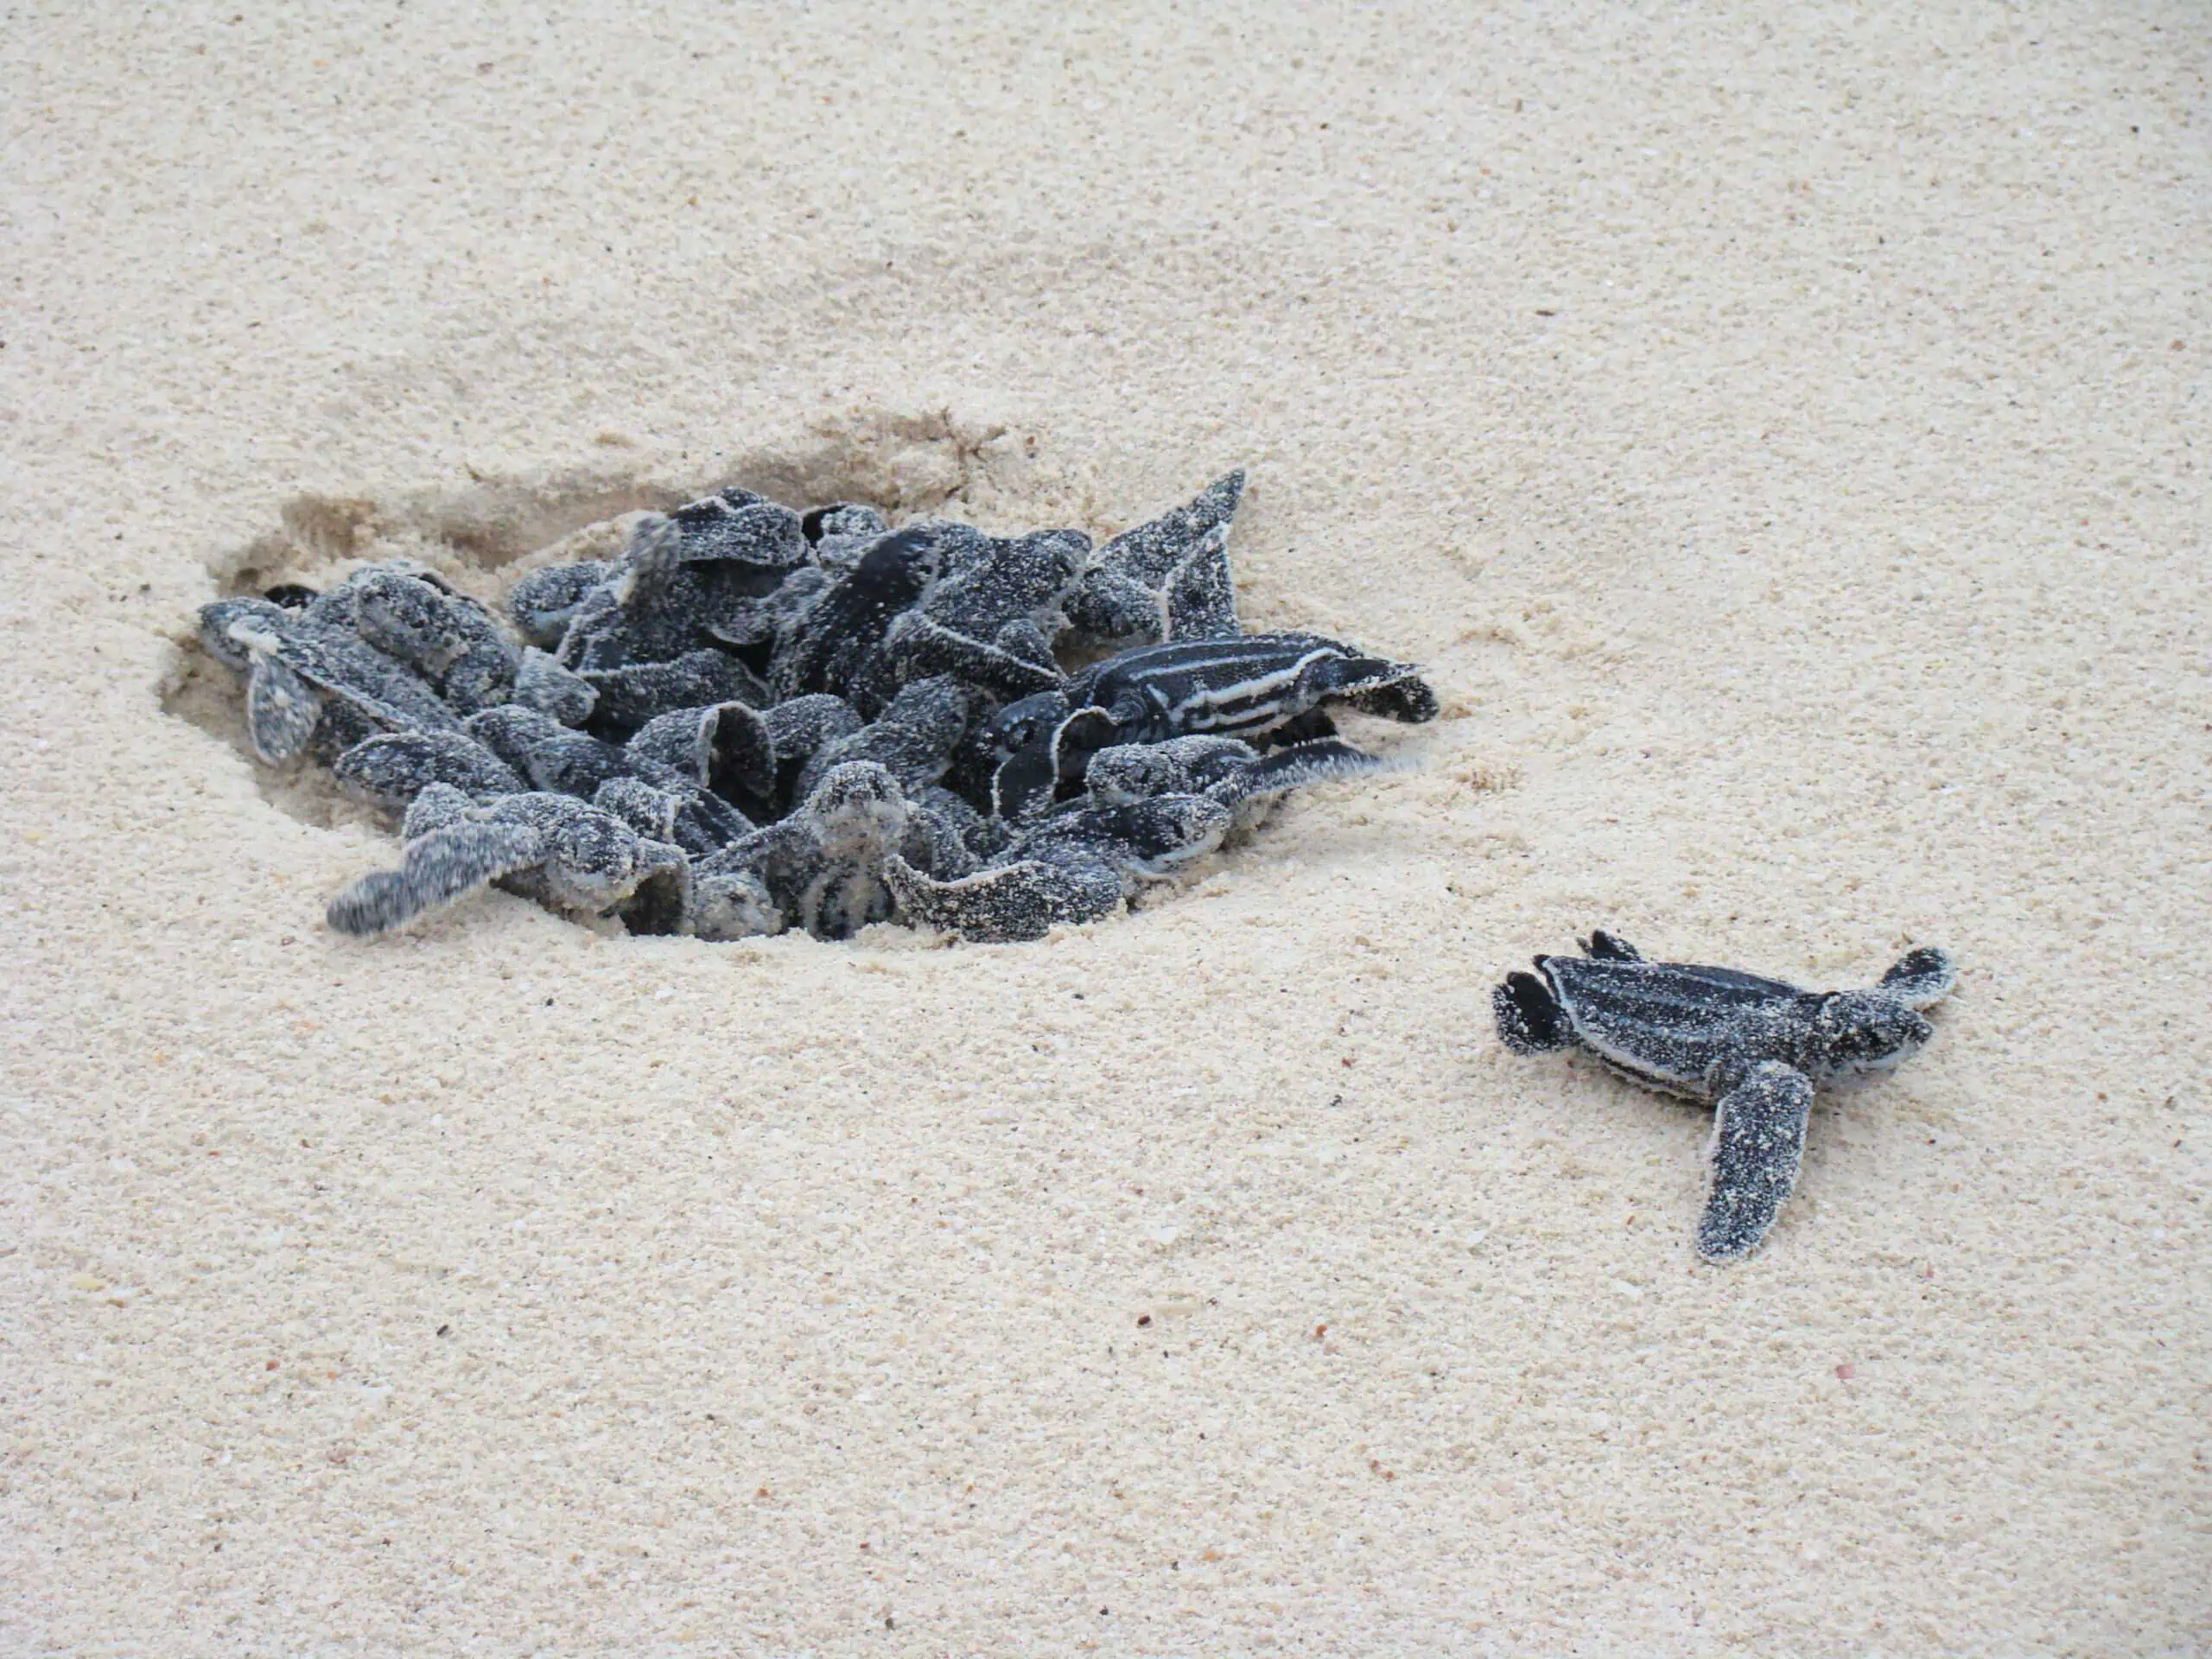 Turtles hatching